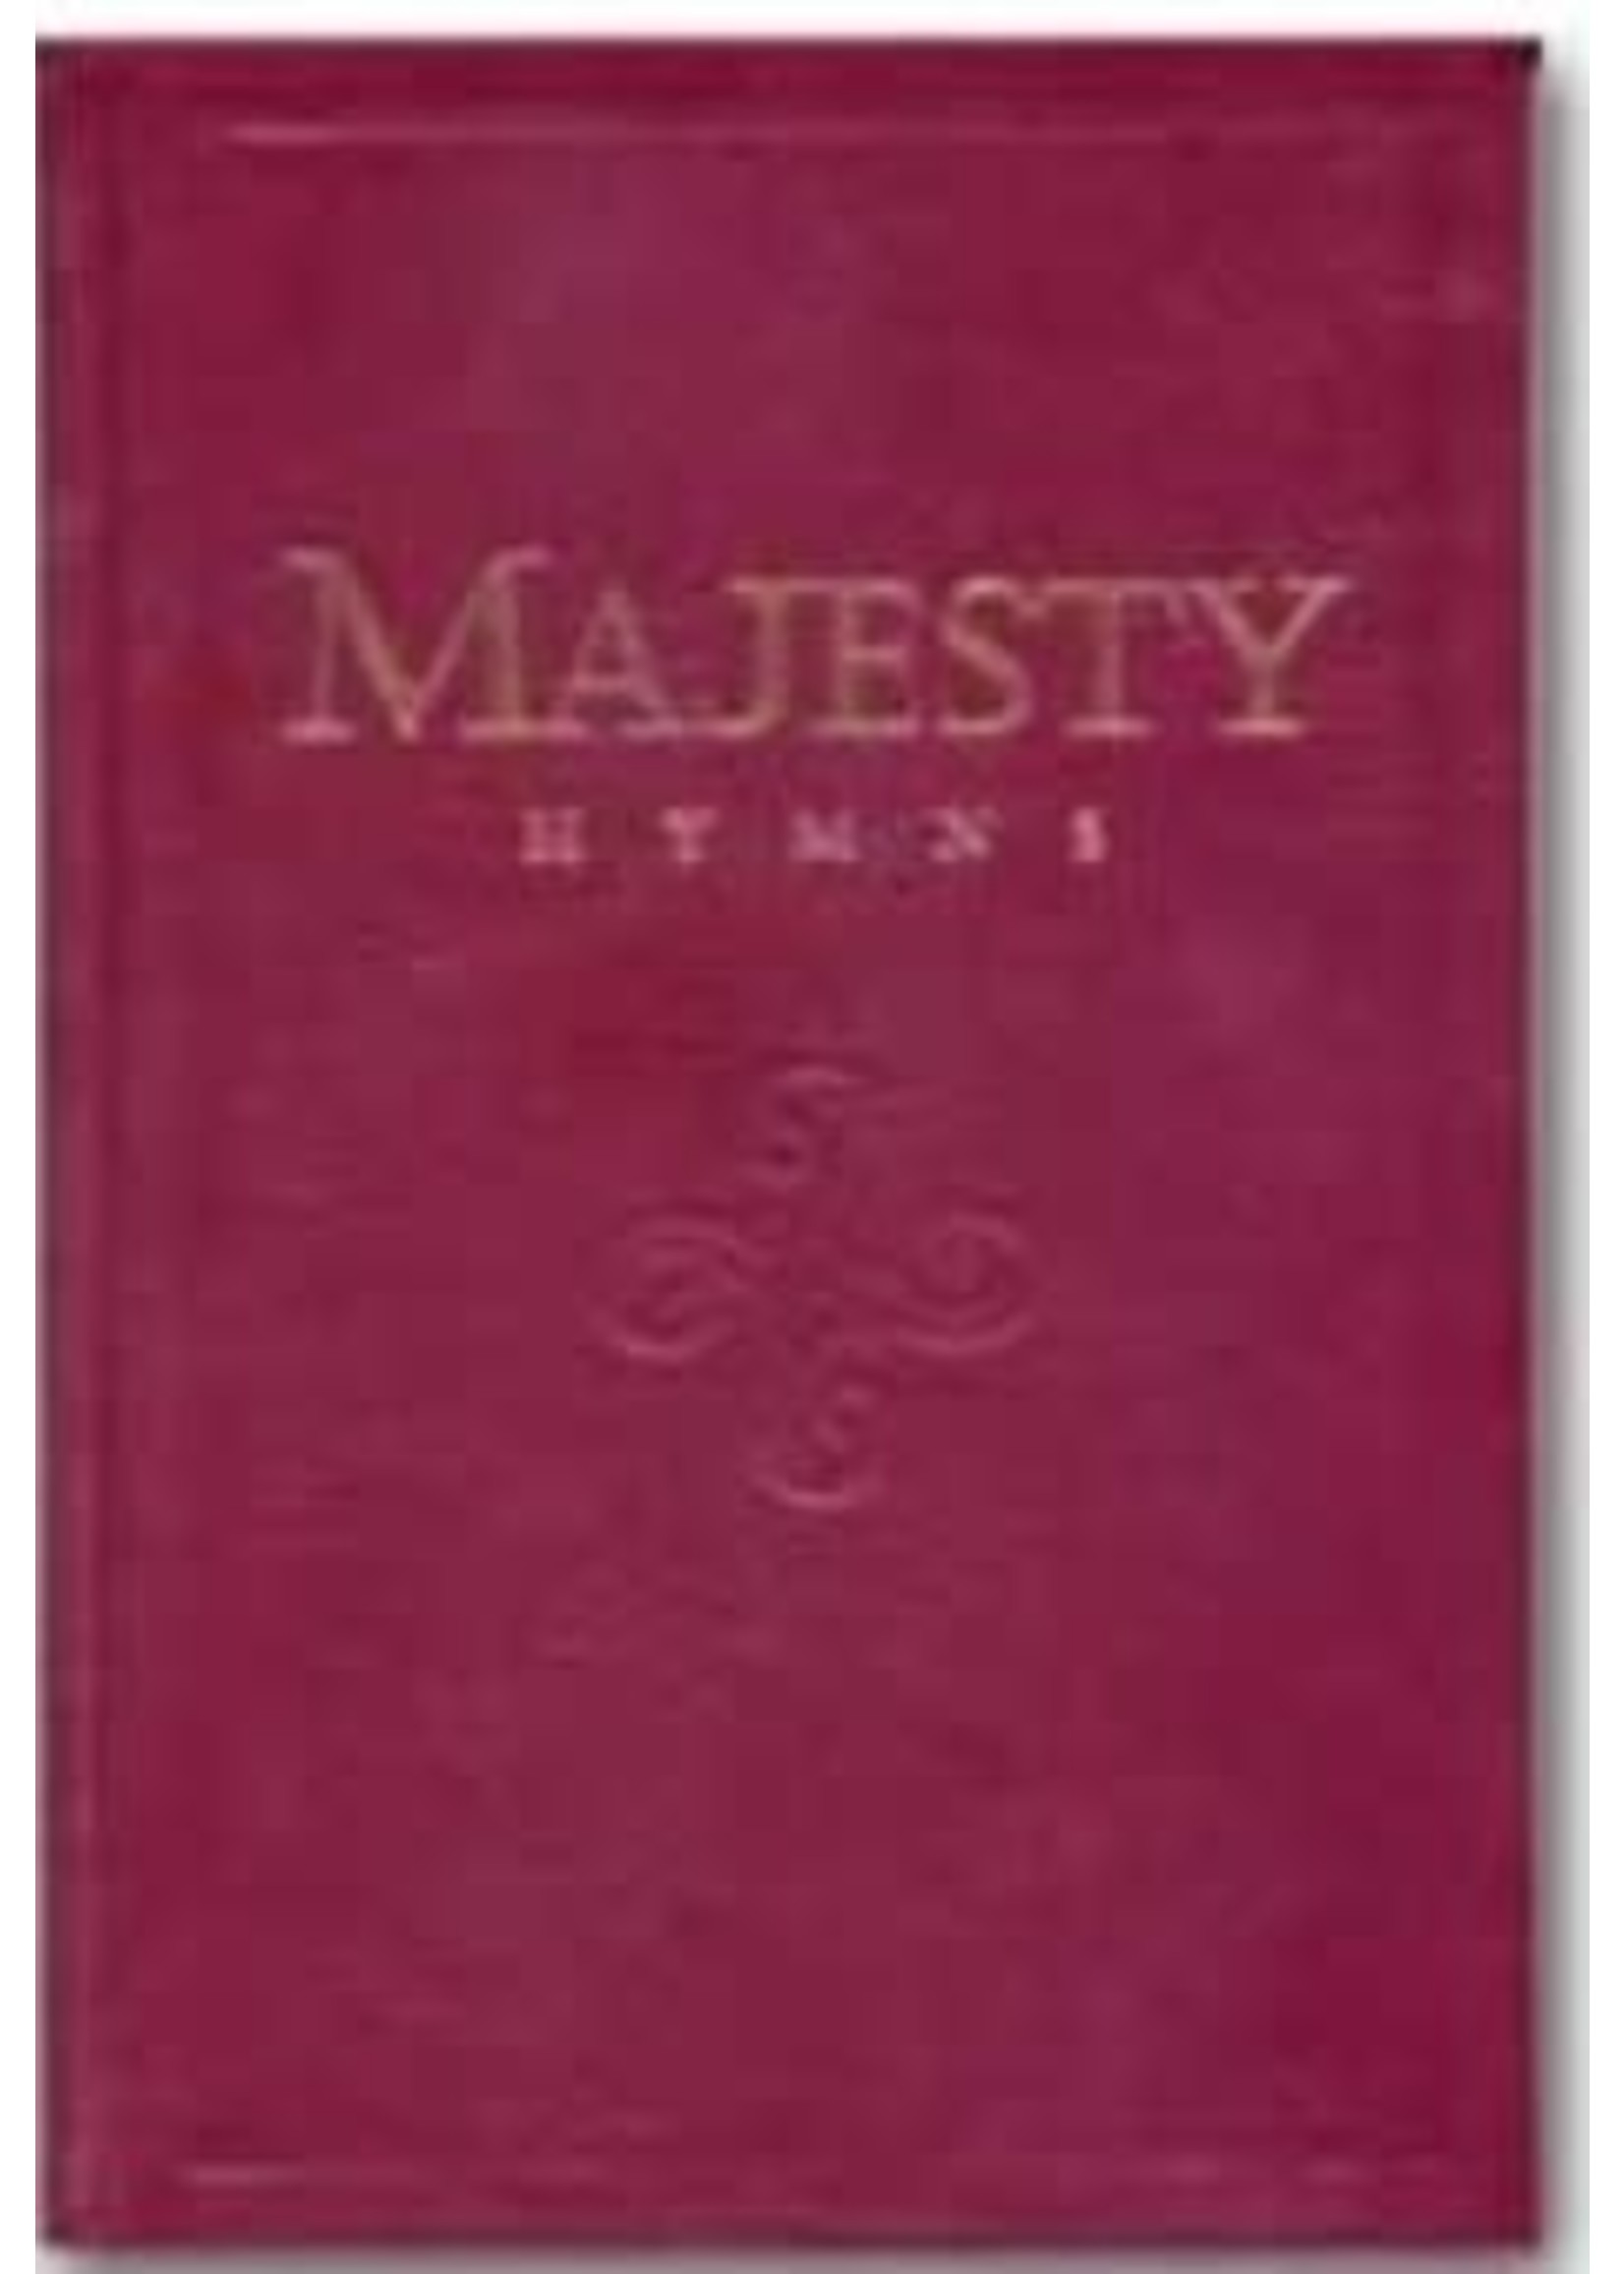 Majesty Hymnal